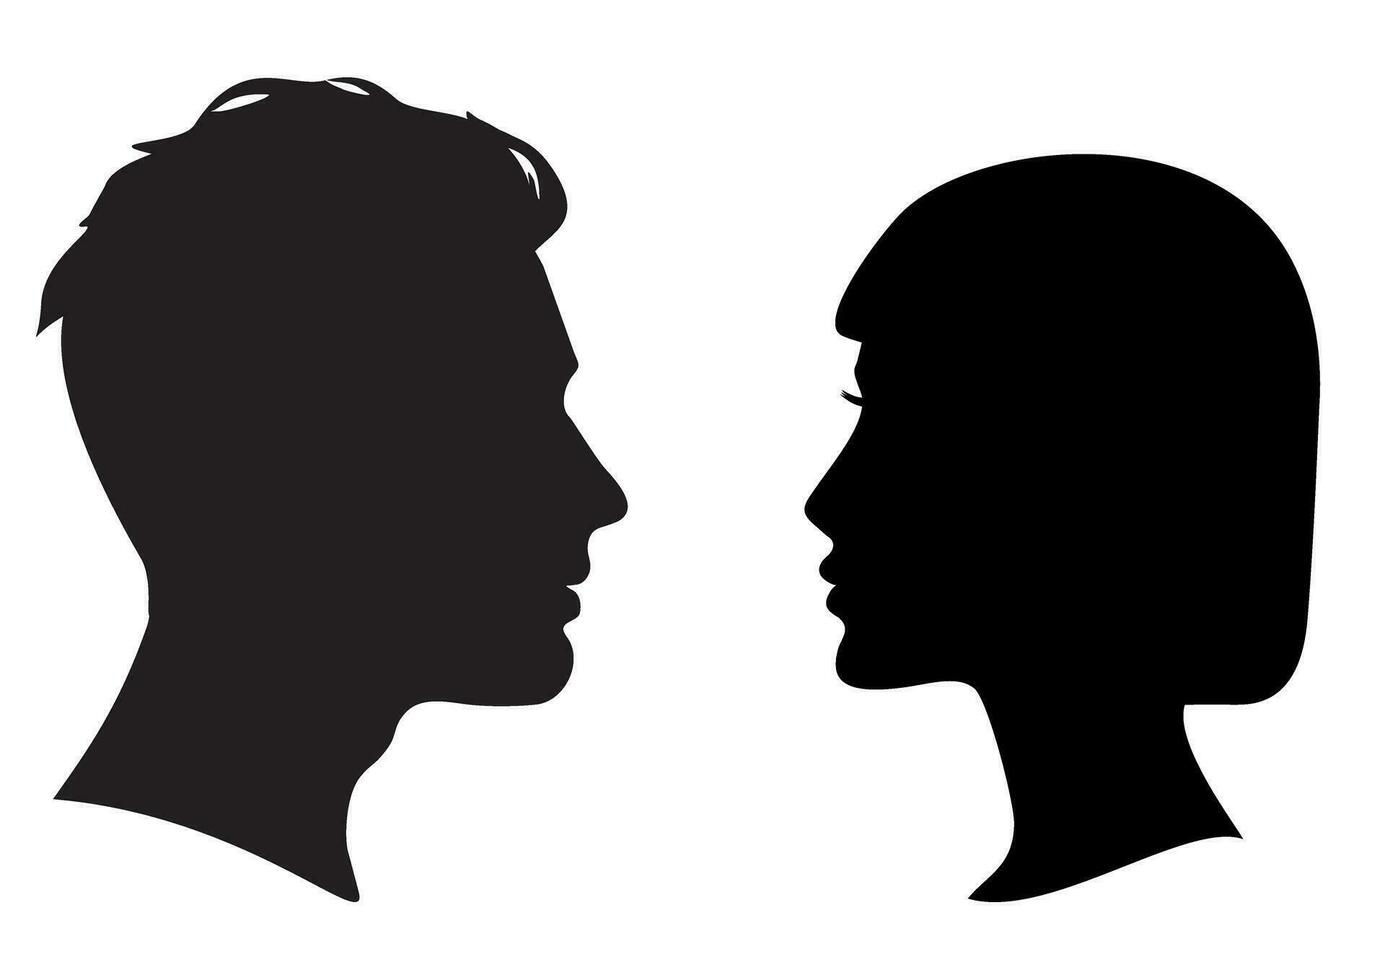 Mens en vrouw gezicht naar gezicht silhouet. silhouet van een hoofd. Mens en vrouw hoofd in profiel. vector illustratie.